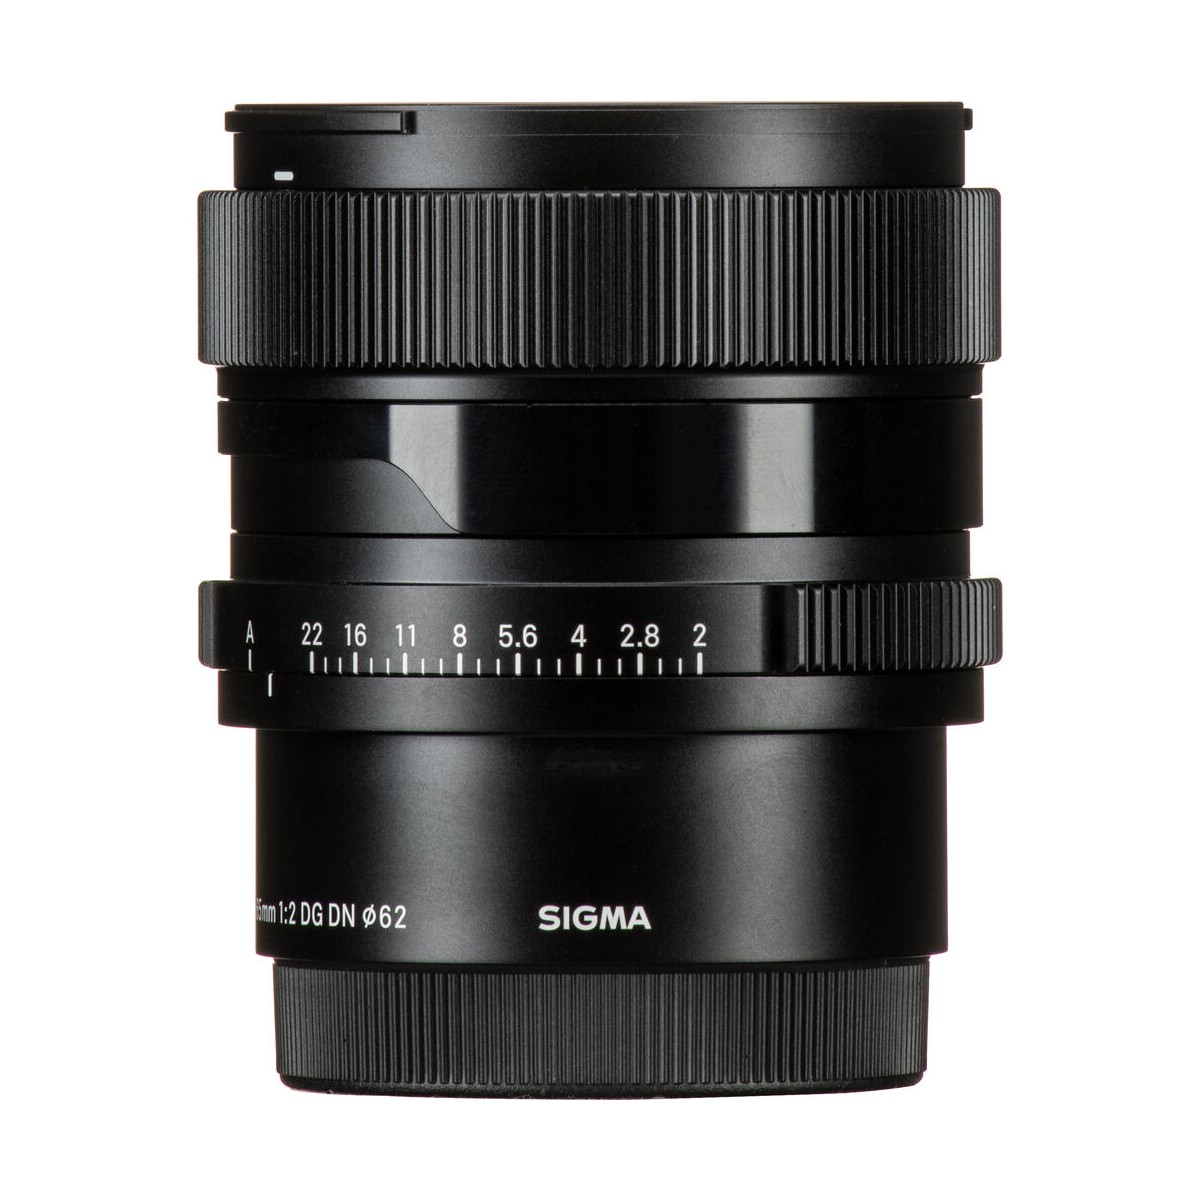 Sigma 24 dg dn. Sigma 65mm f2 DG DN Sony e.